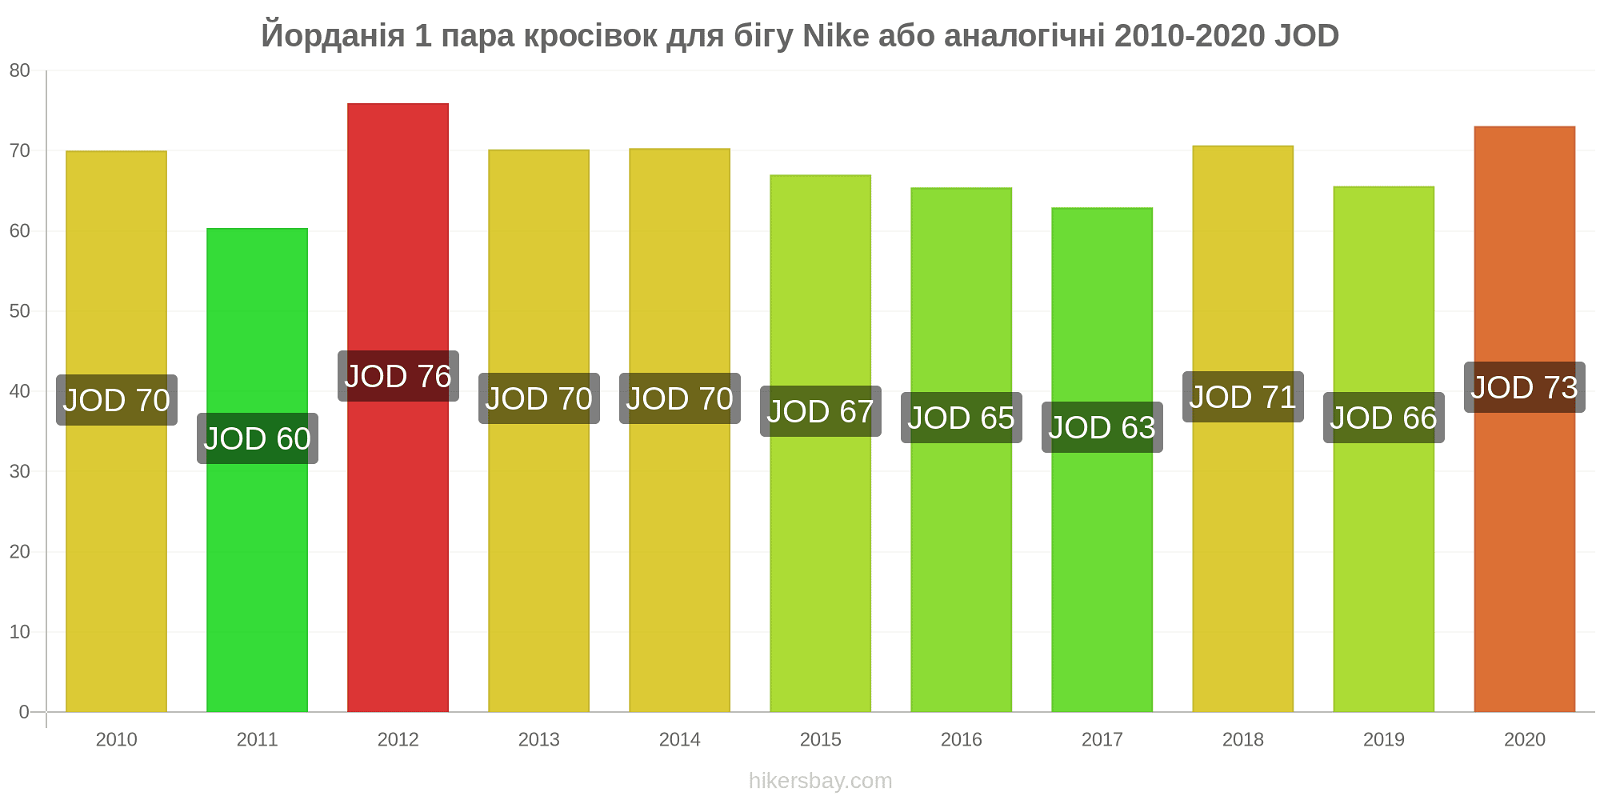 Йорданія зміни цін 1 пара кросівок для бігу Nike або аналогічні hikersbay.com